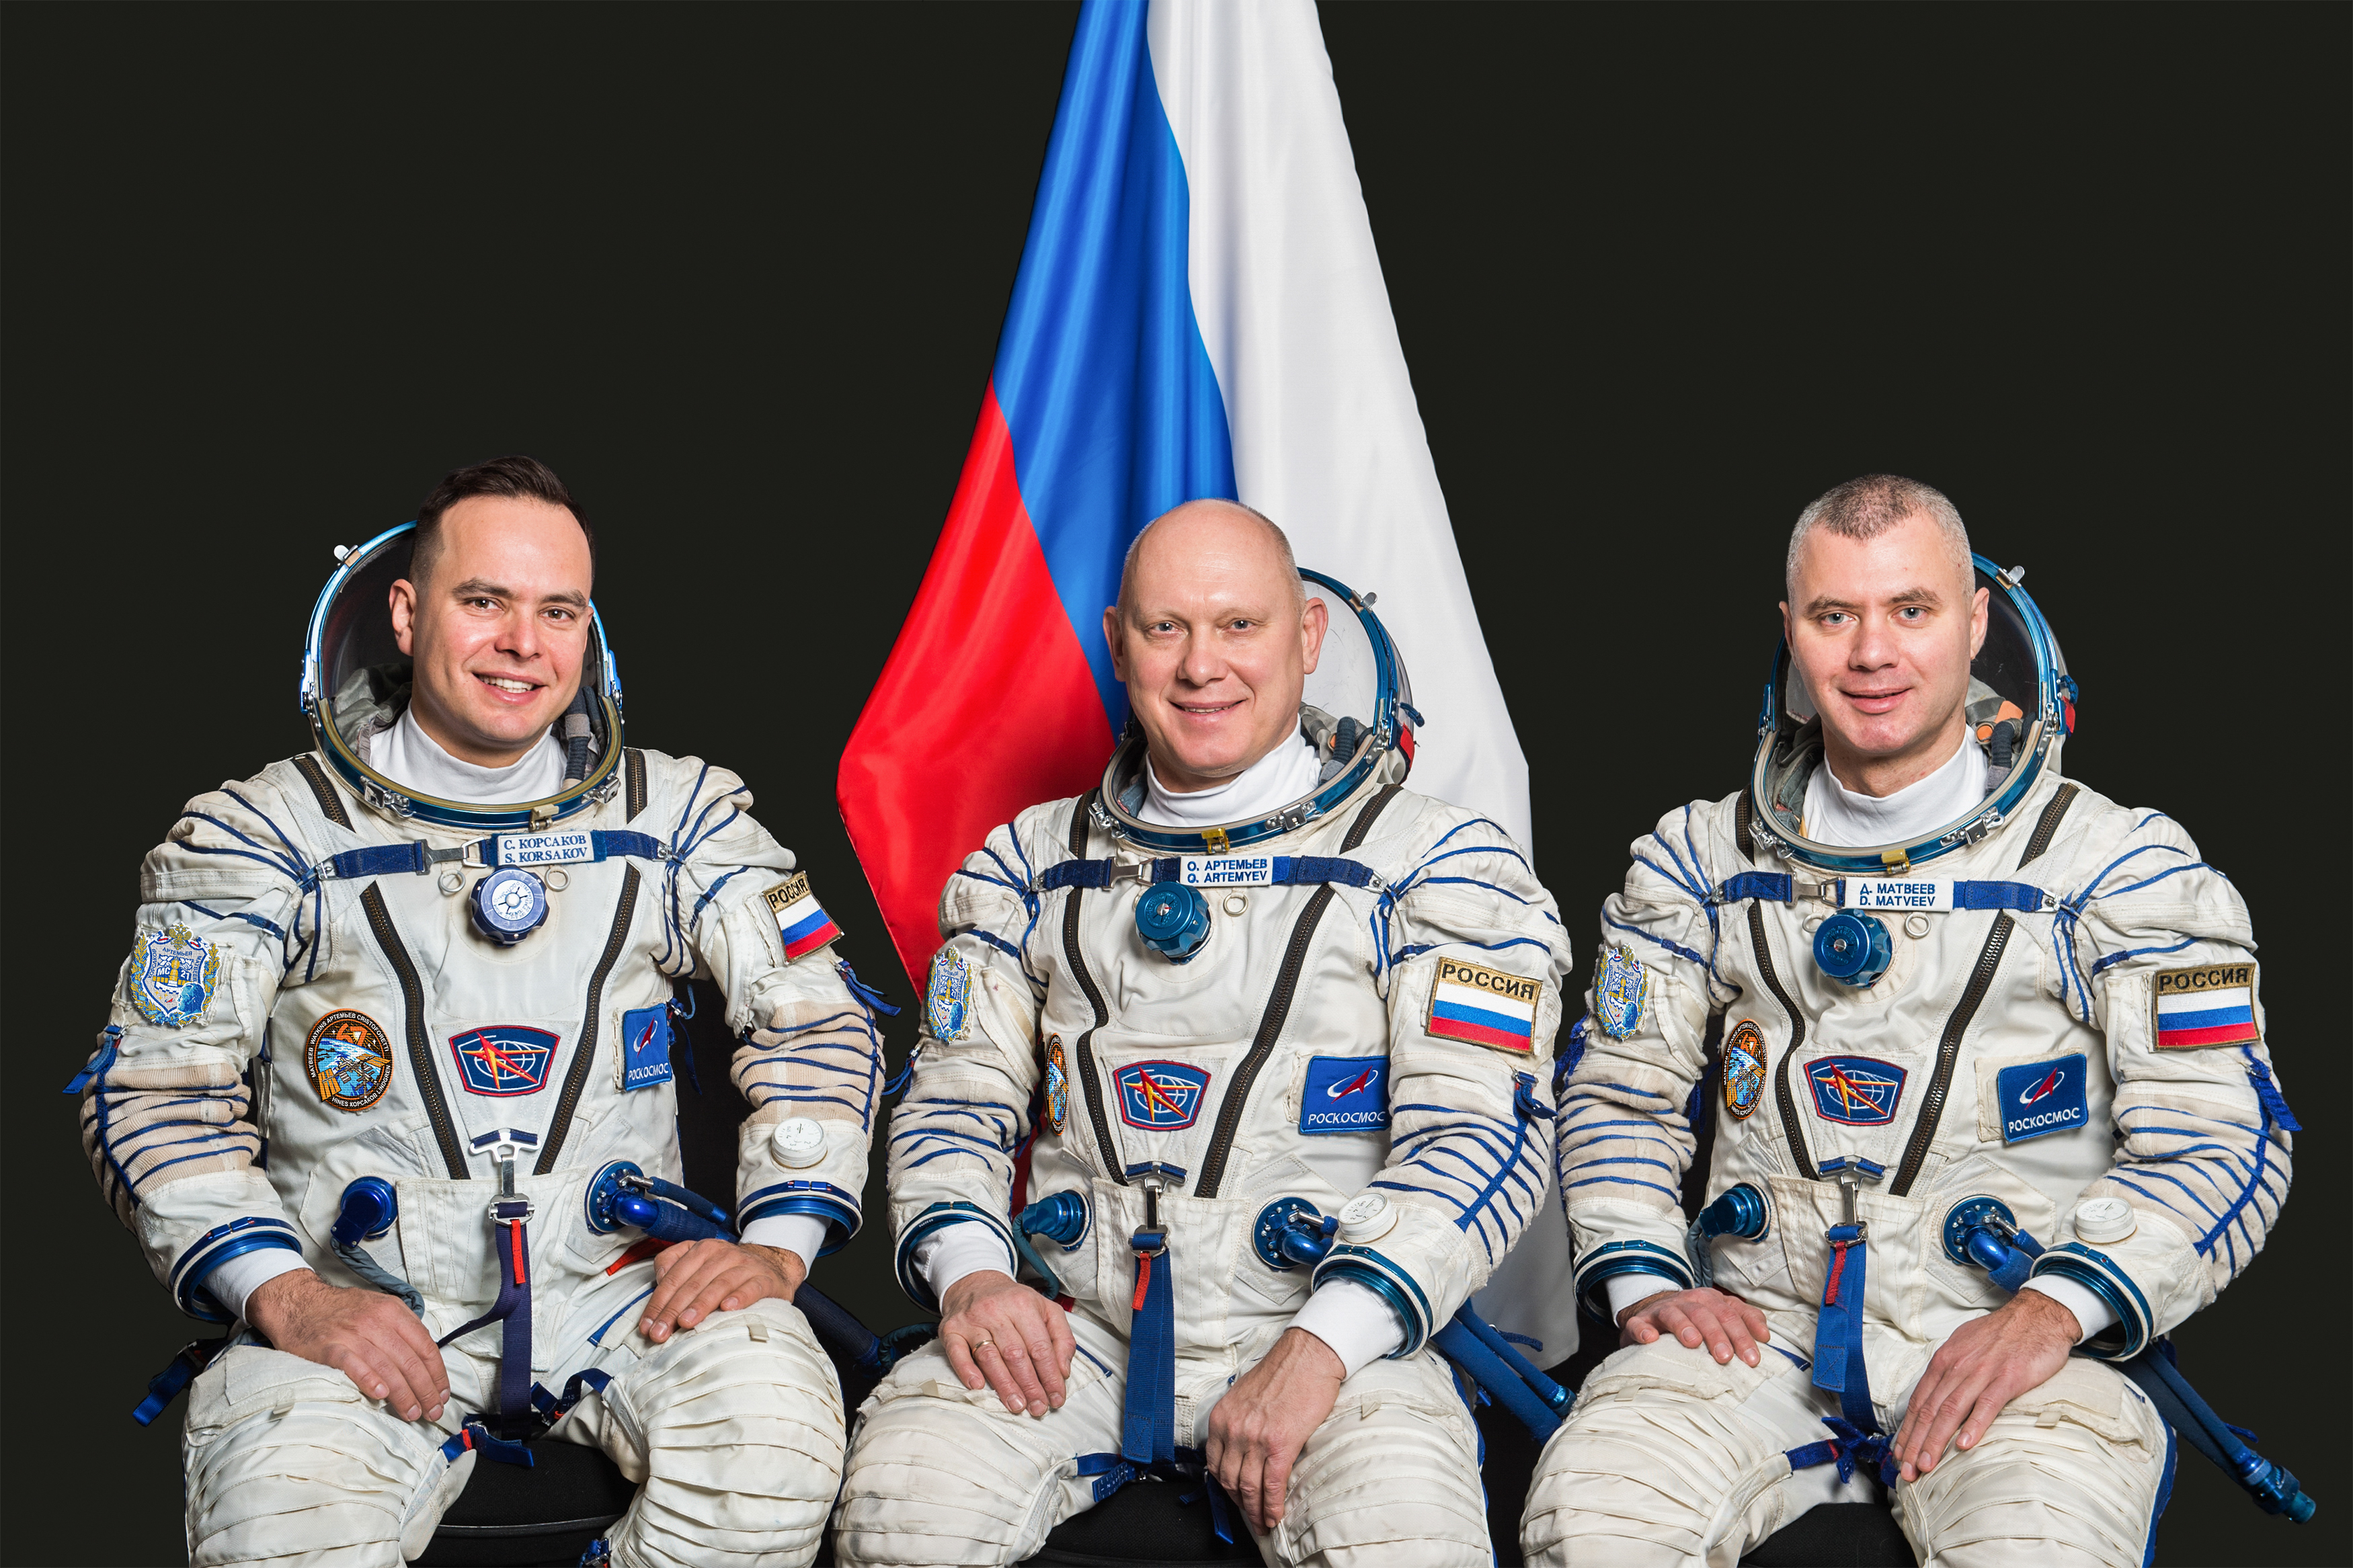 Путь россии в космос